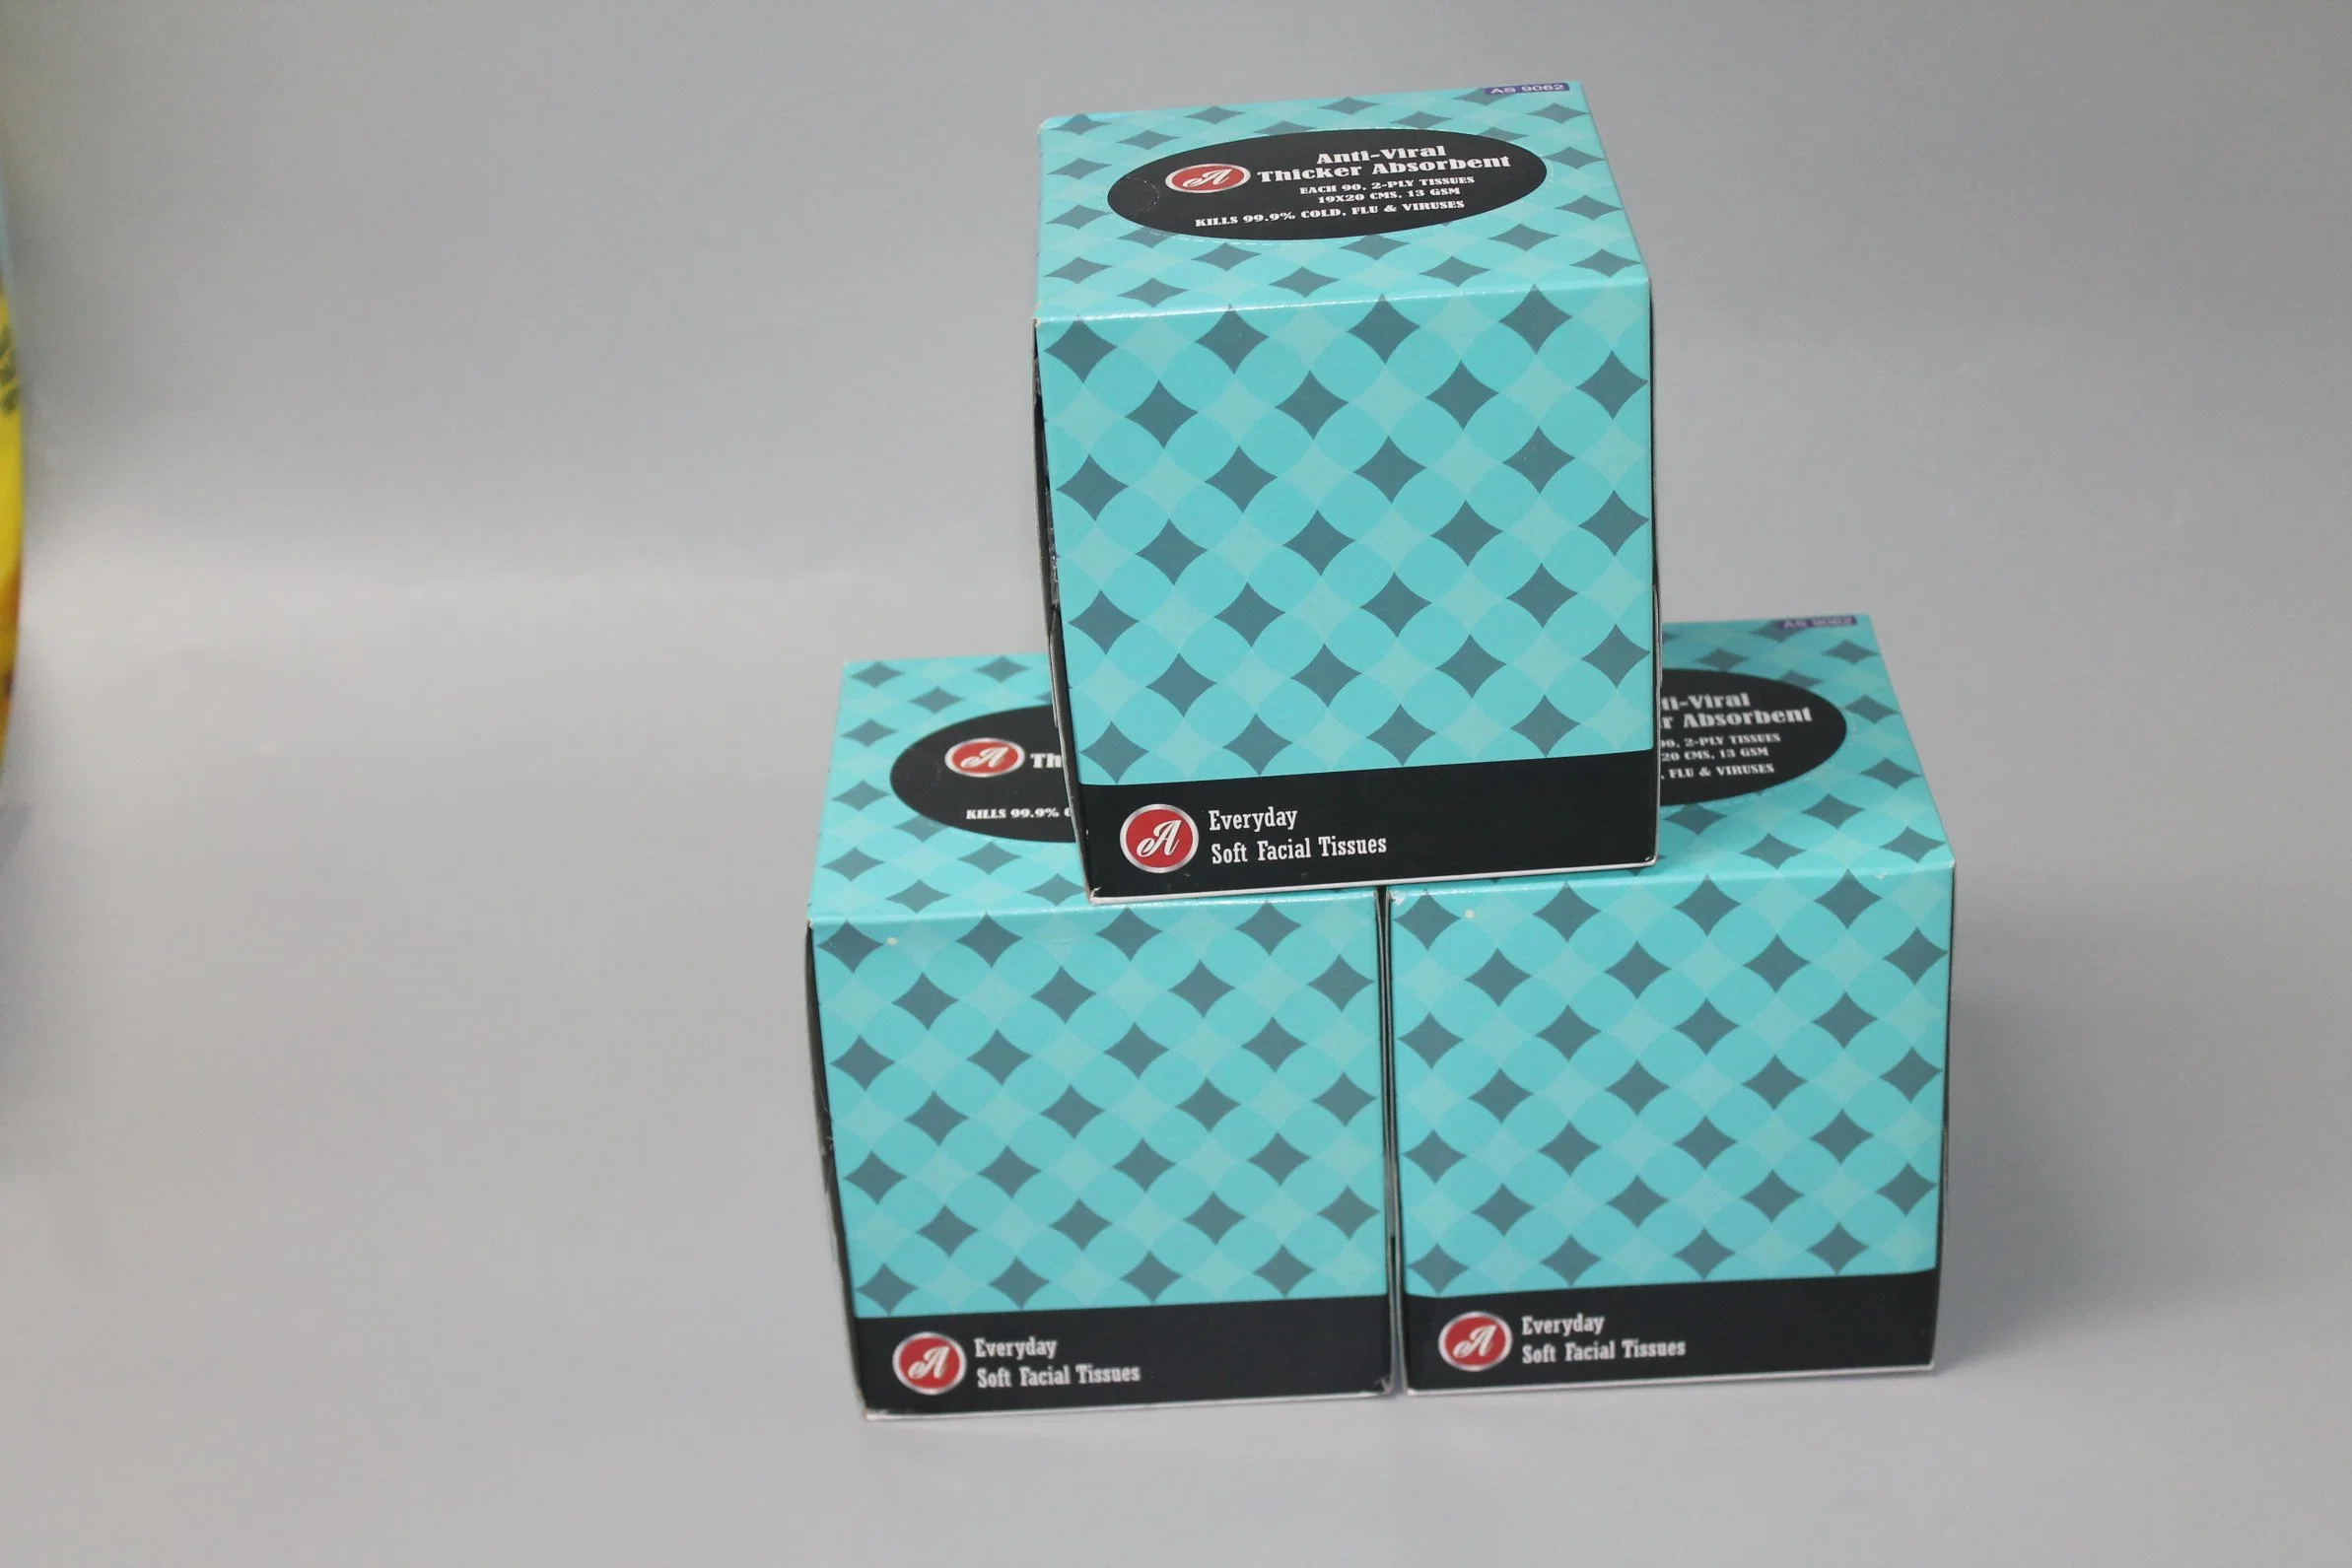 O conjunto caixa de celulose virgem papel higiénico para uso doméstico